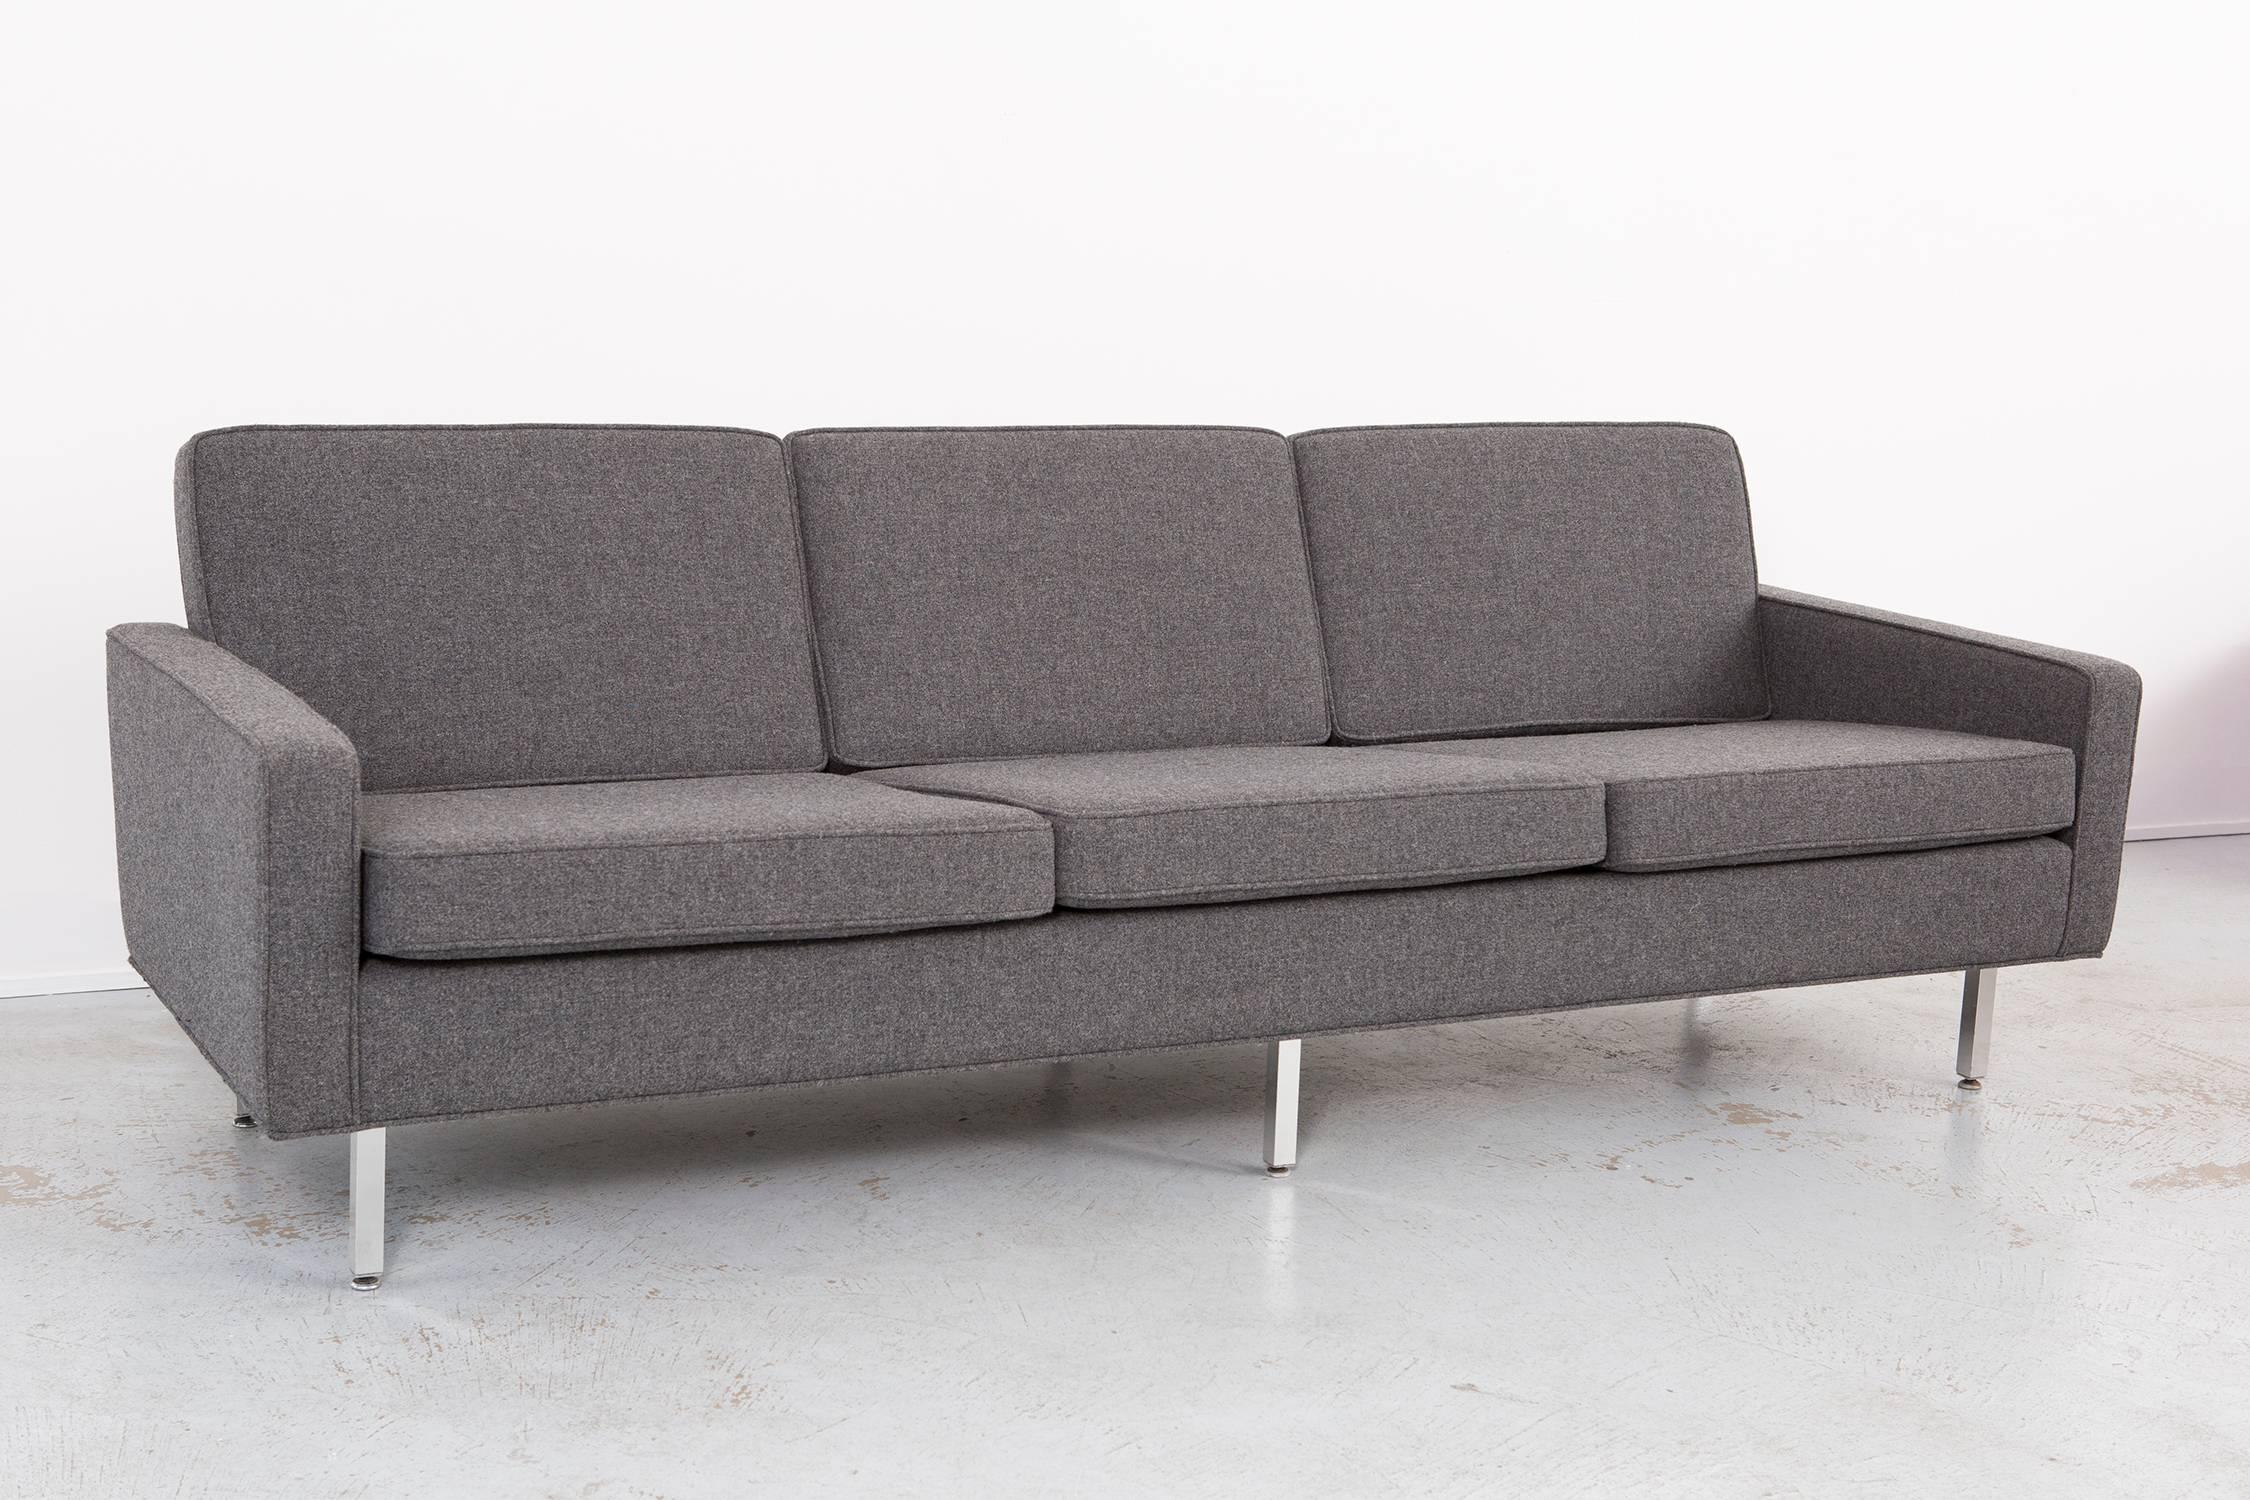 Thonet sofa,

circa 1950s.

Reupholstered in Maharam fabric.

Dimensions: 28